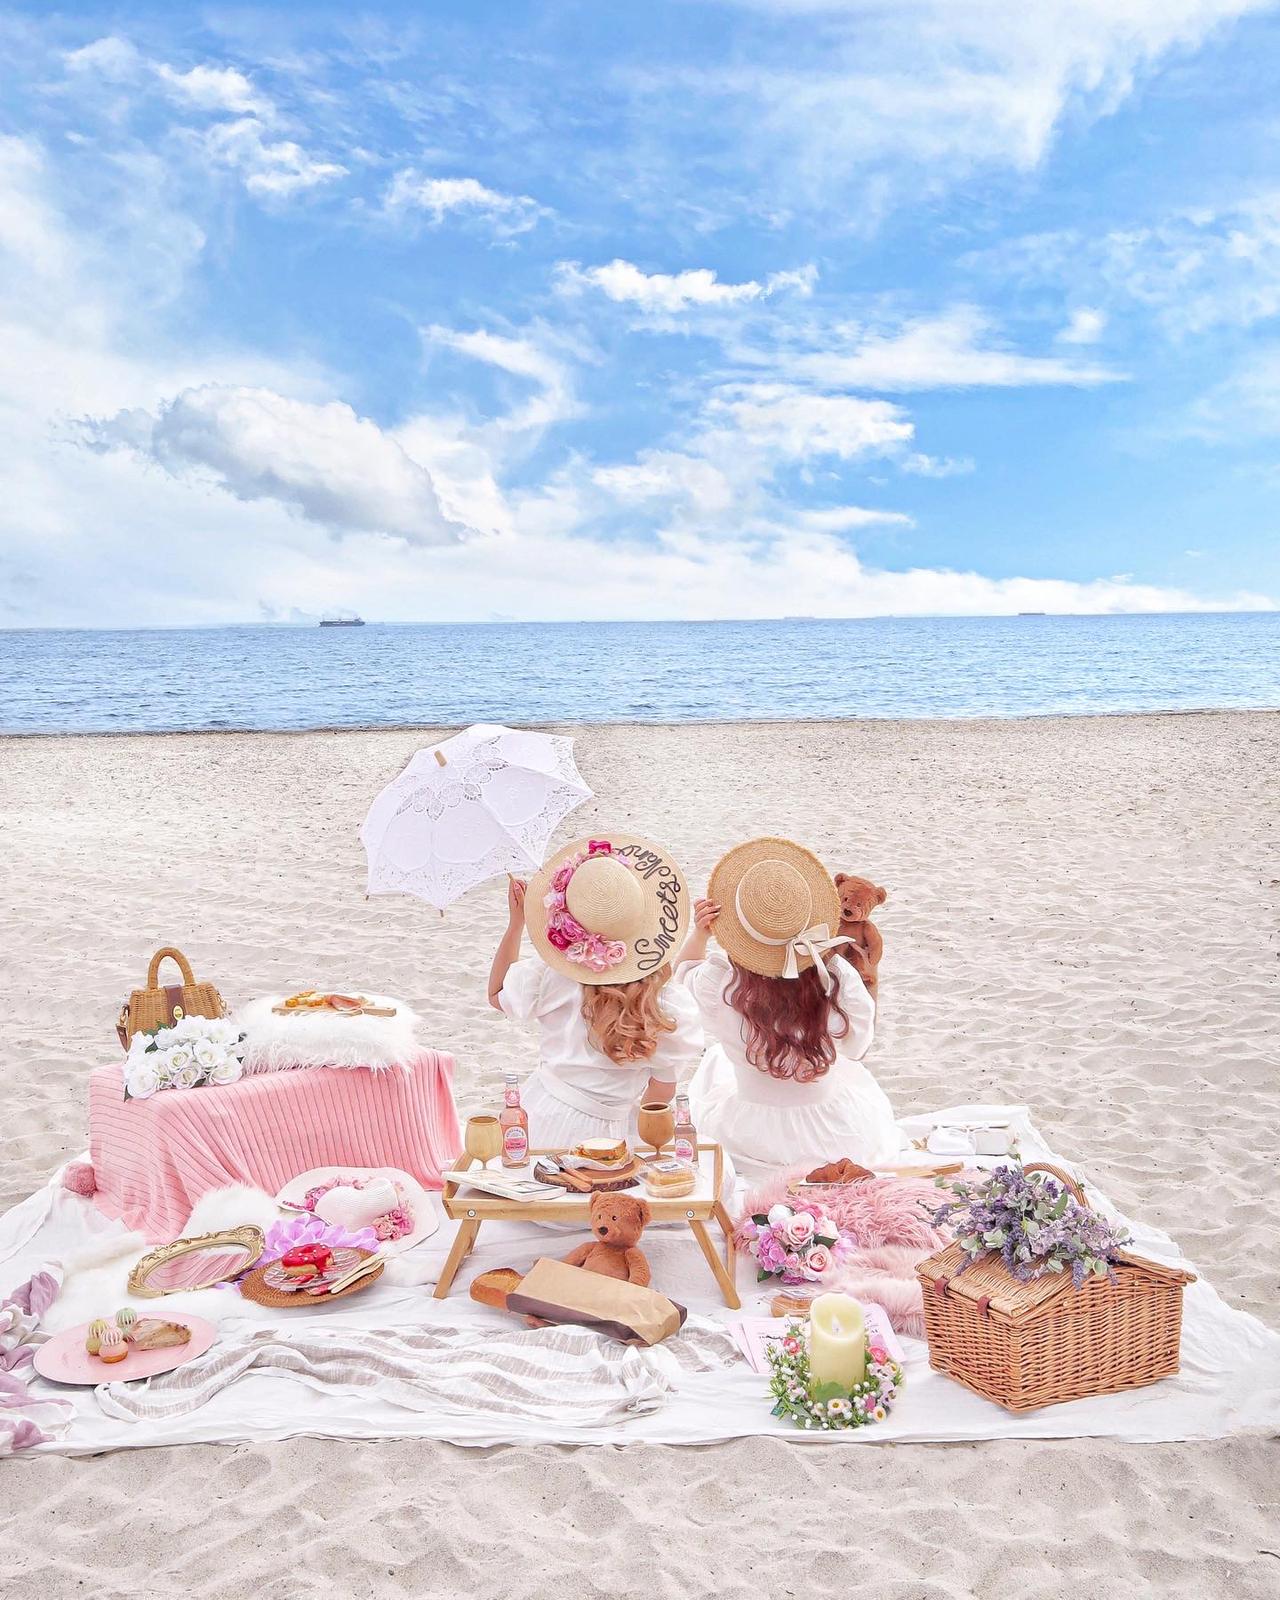 千葉 千葉にある 白い砂浜 Sweets Nanoが投稿したフォトブック Lemon8